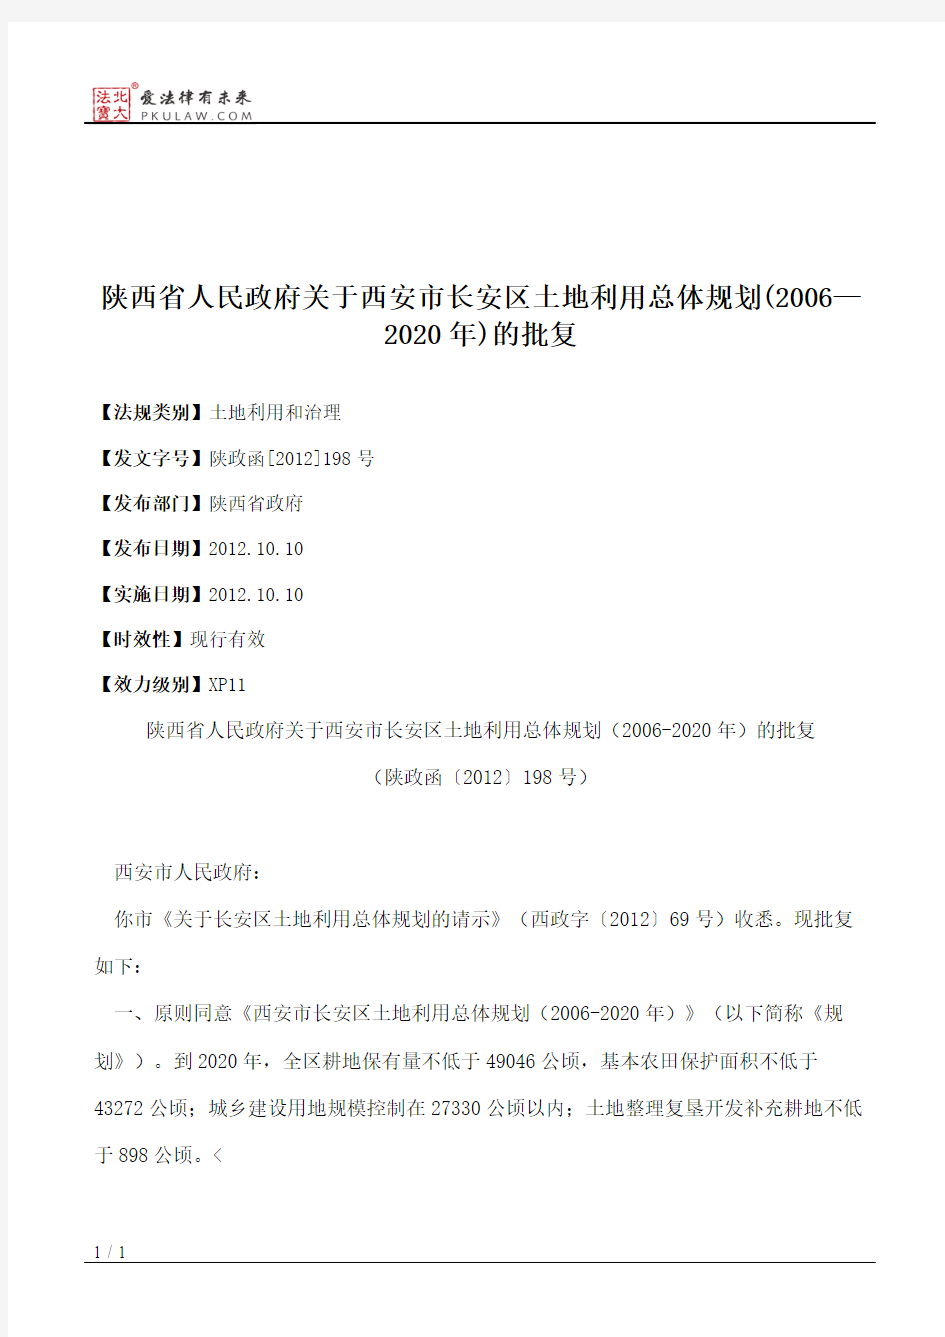 陕西省人民政府关于西安市长安区土地利用总体规划(2006—2020年)的批复